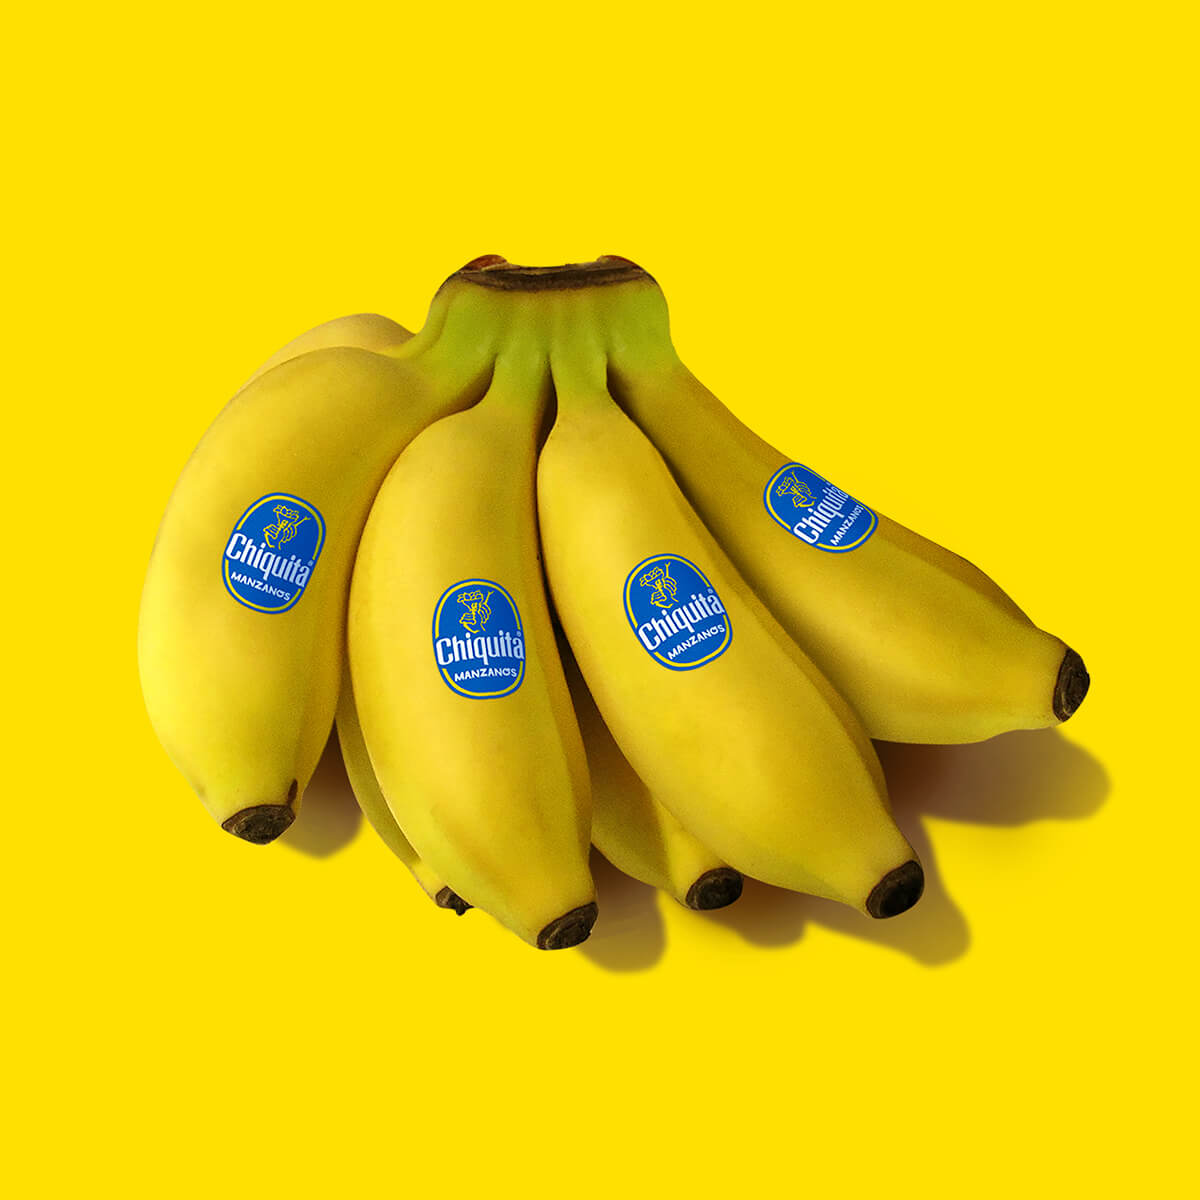 manzano bananas